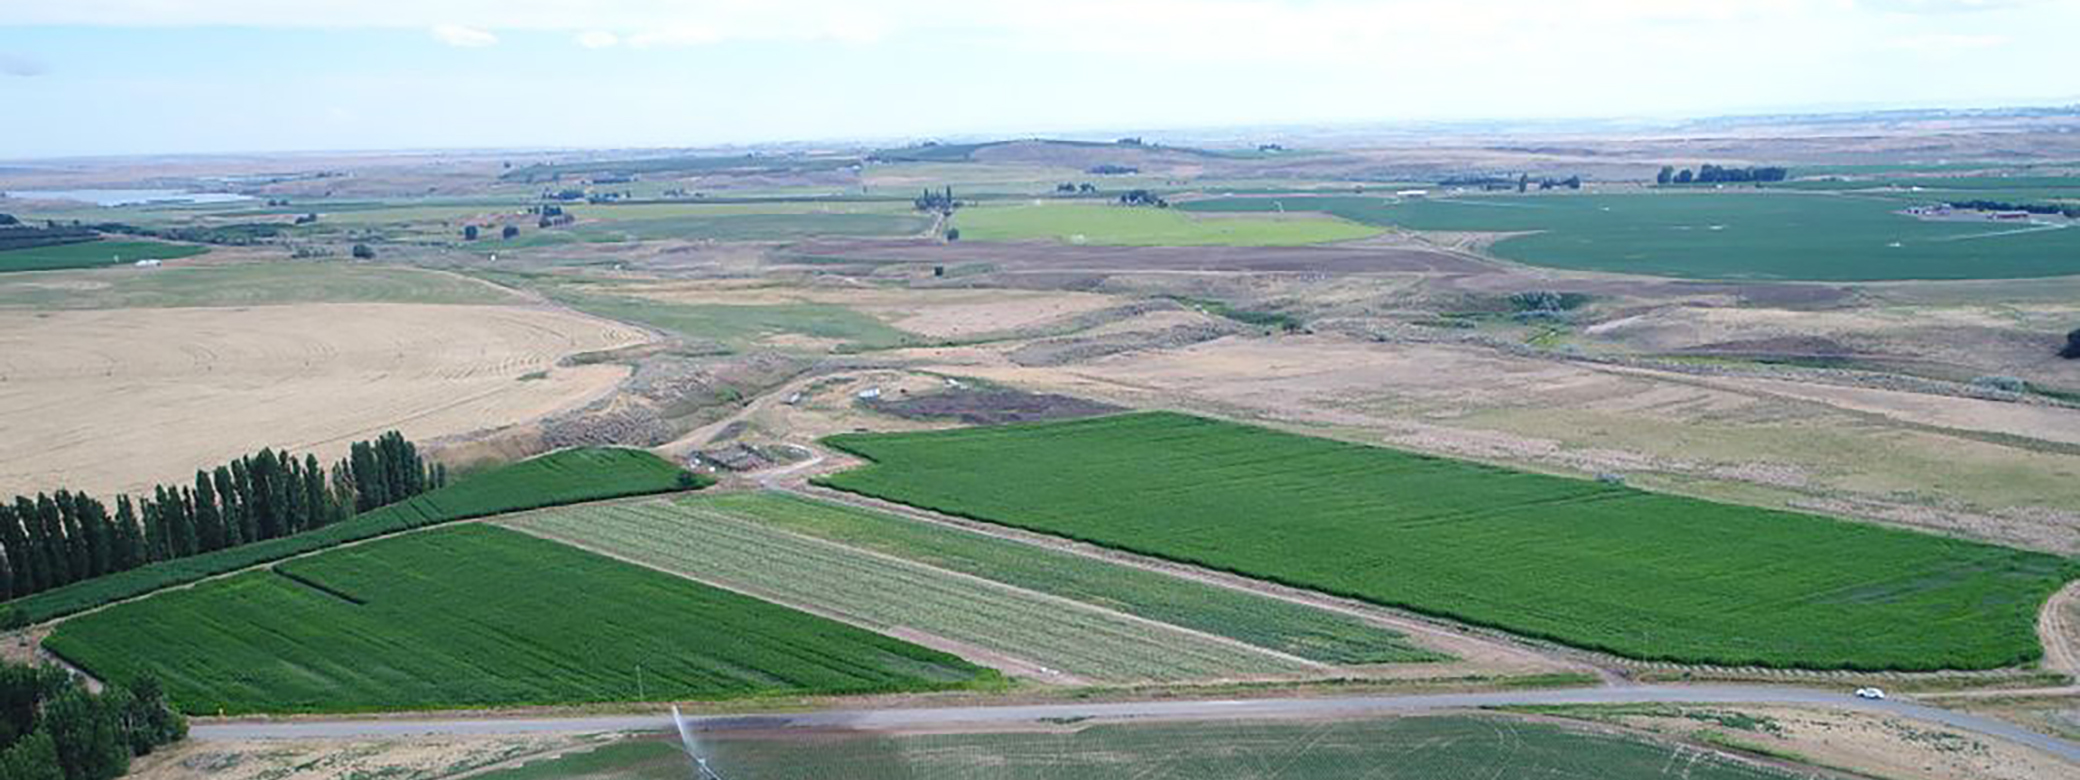 view of farmland in Othello, Washington